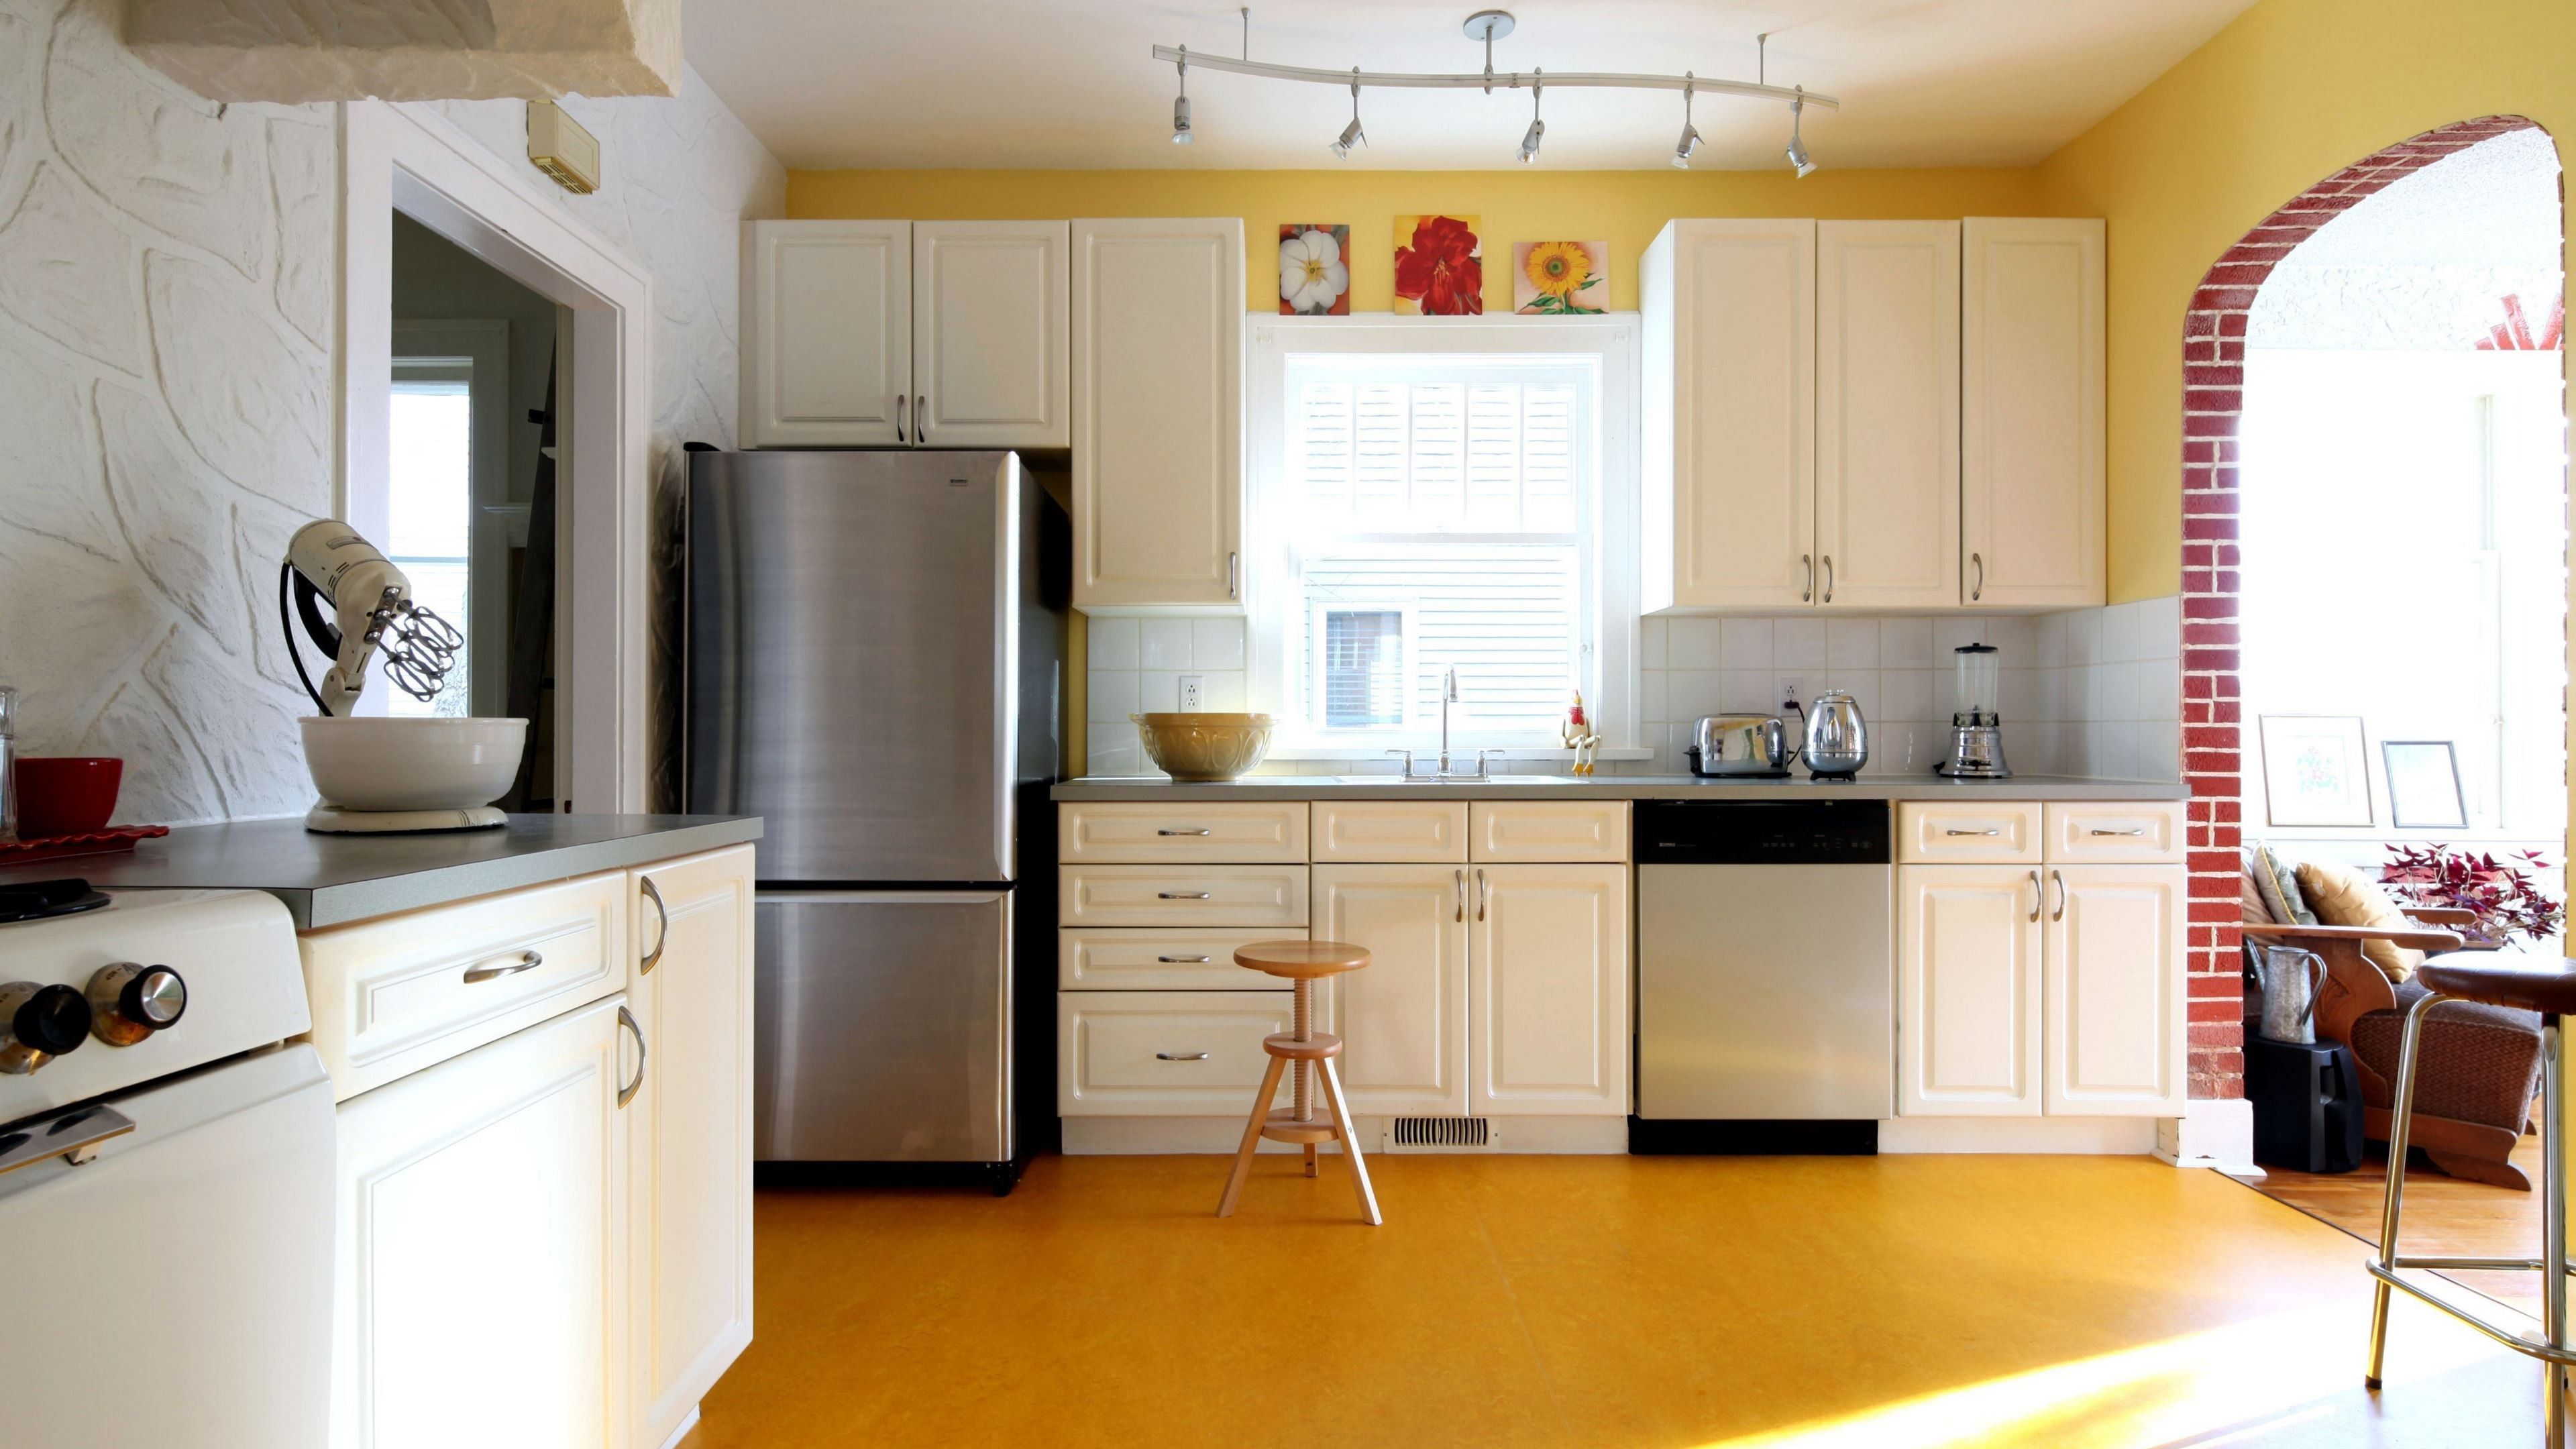 papier peint cuisine jaune,plan de travail,meubles,armoires,chambre,cuisine